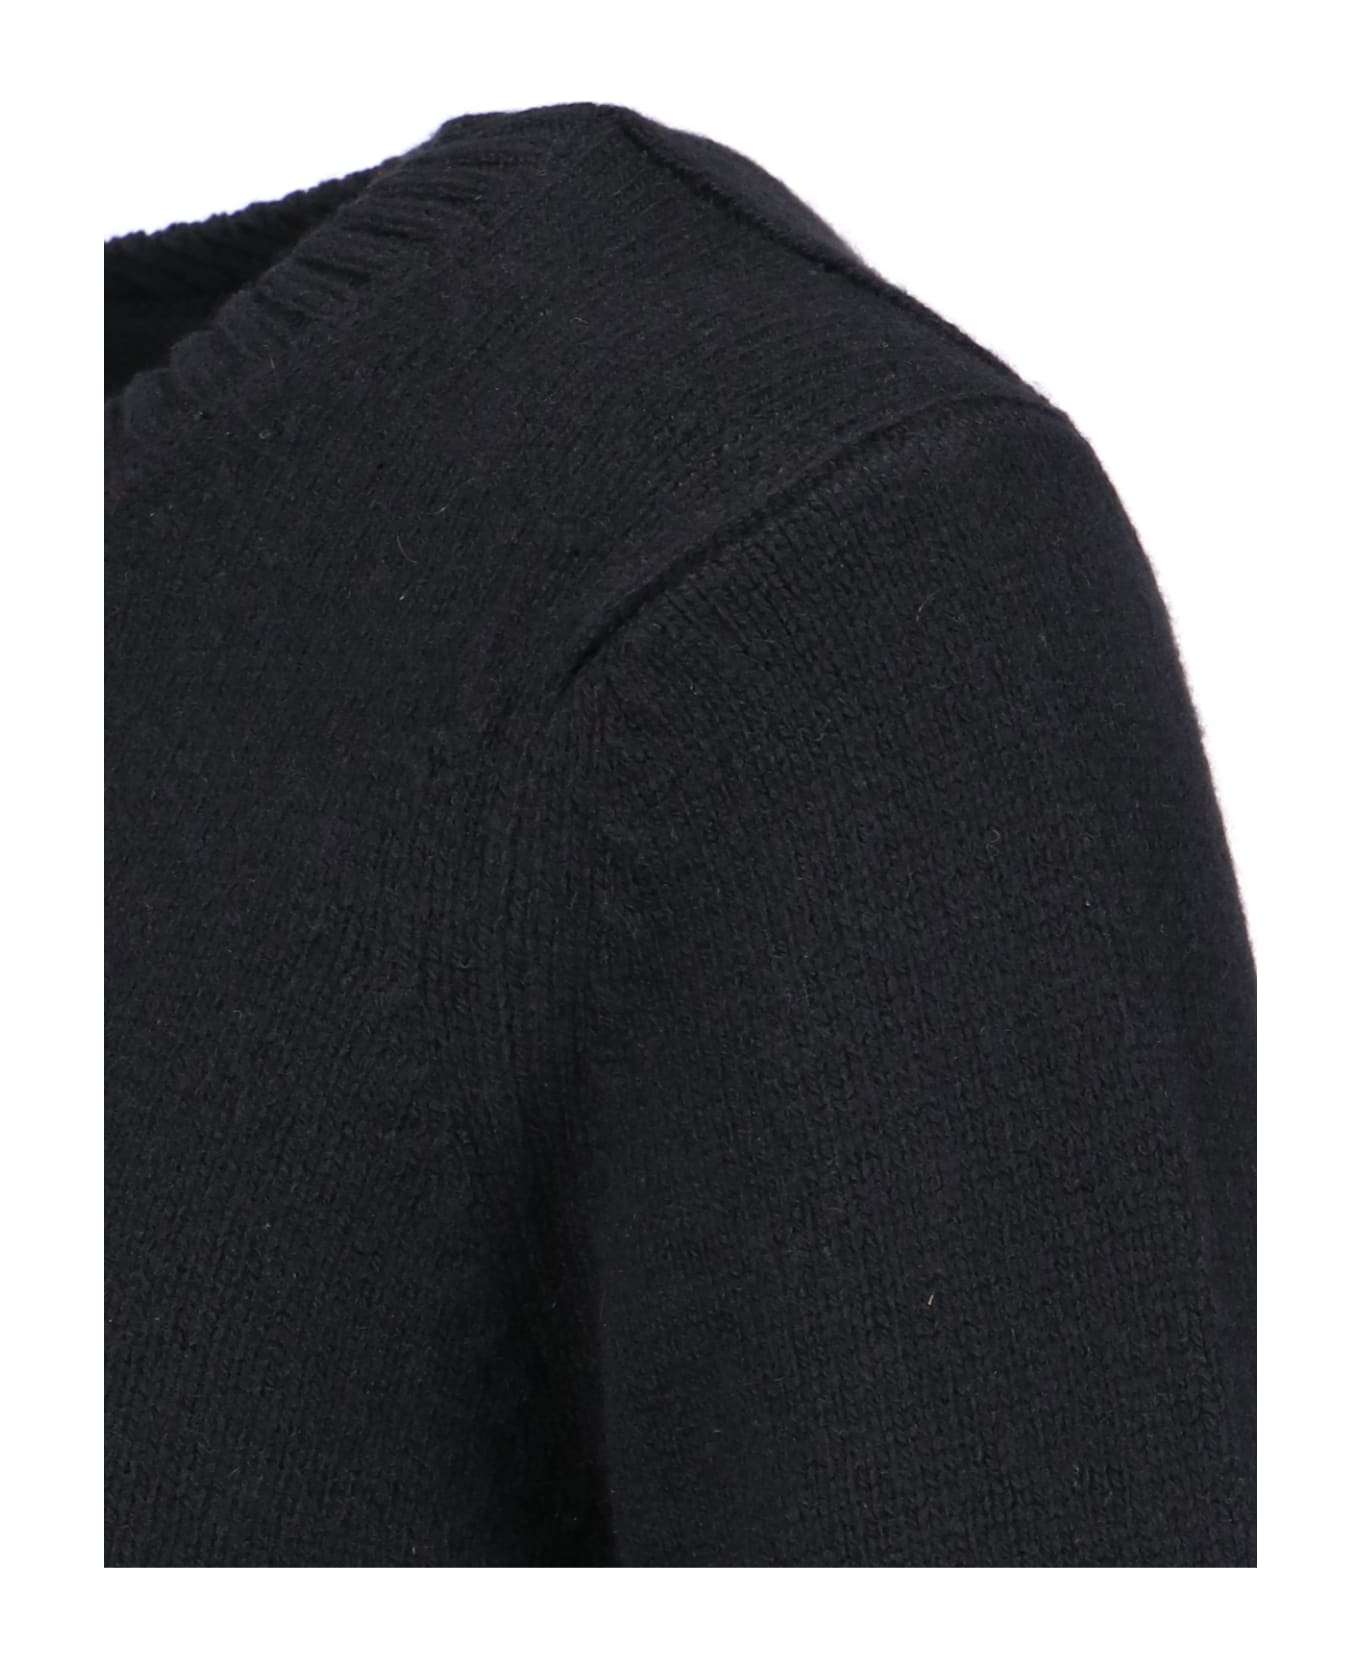 Khaite Cashmere Sweater - Black   ニットウェア